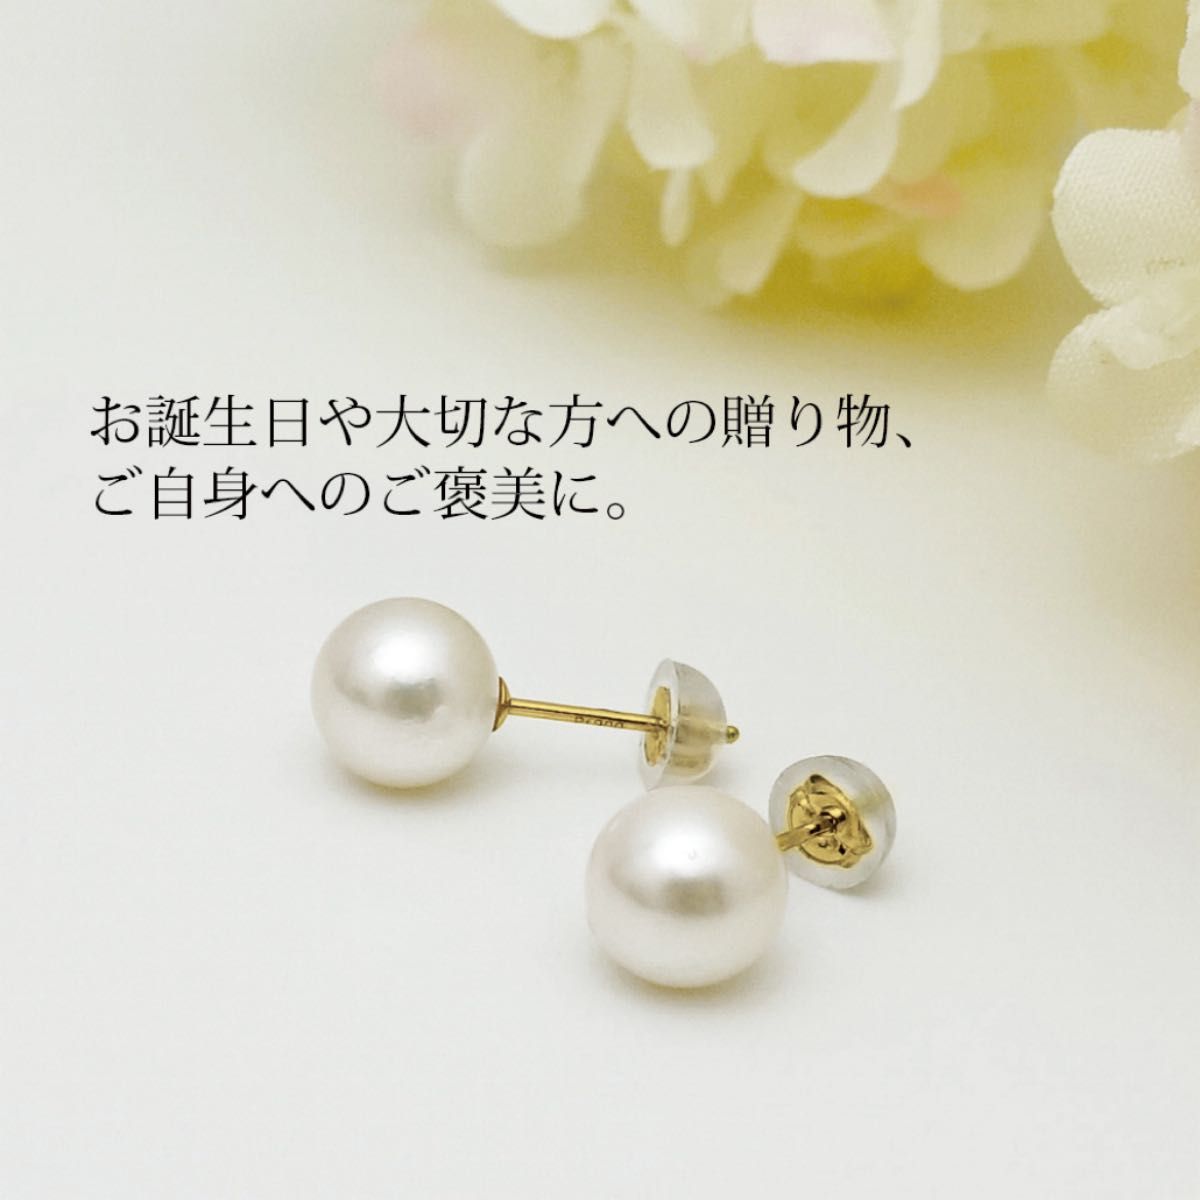 新品 K18 あこや真珠 7mm 18金ピアス  刻印あり 上質 本真珠 日本製 ペア 